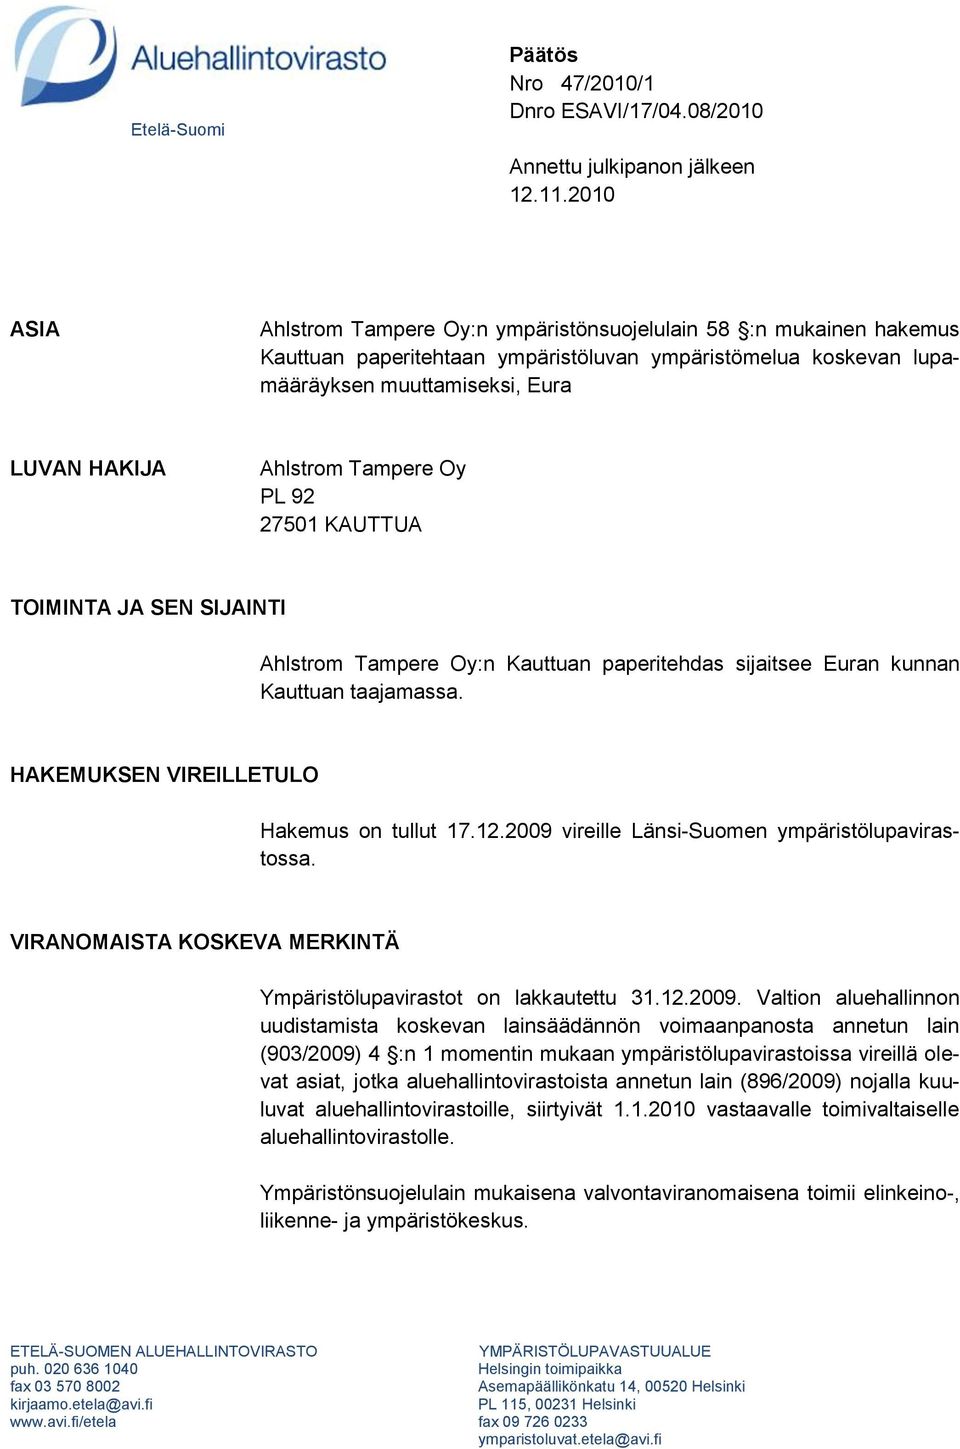 Tampere Oy PL 92 27501 KAUTTUA TOIMINTA JA SEN SIJAINTI Ahlstrom Tampere Oy:n Kauttuan paperitehdas sijaitsee Euran kunnan Kauttuan taajamassa. HAKEMUKSEN VIREILLETULO Hakemus on tullut 17.12.